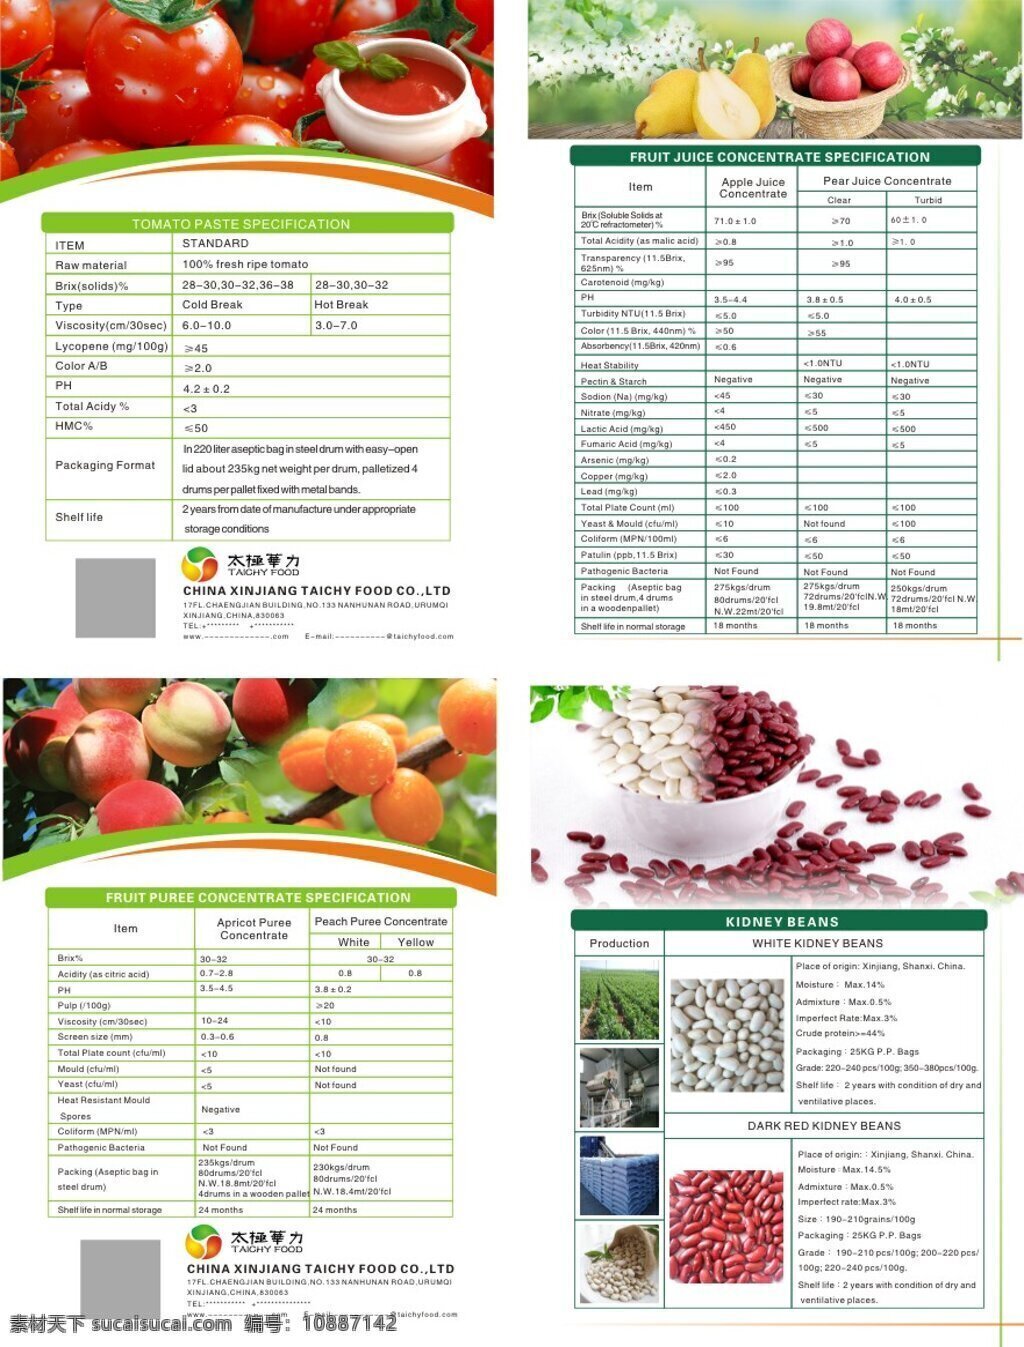 农副产品宣传 格式 农副产品 健康 绿色环保 功能最突出 农副业 主要 产品 宣传